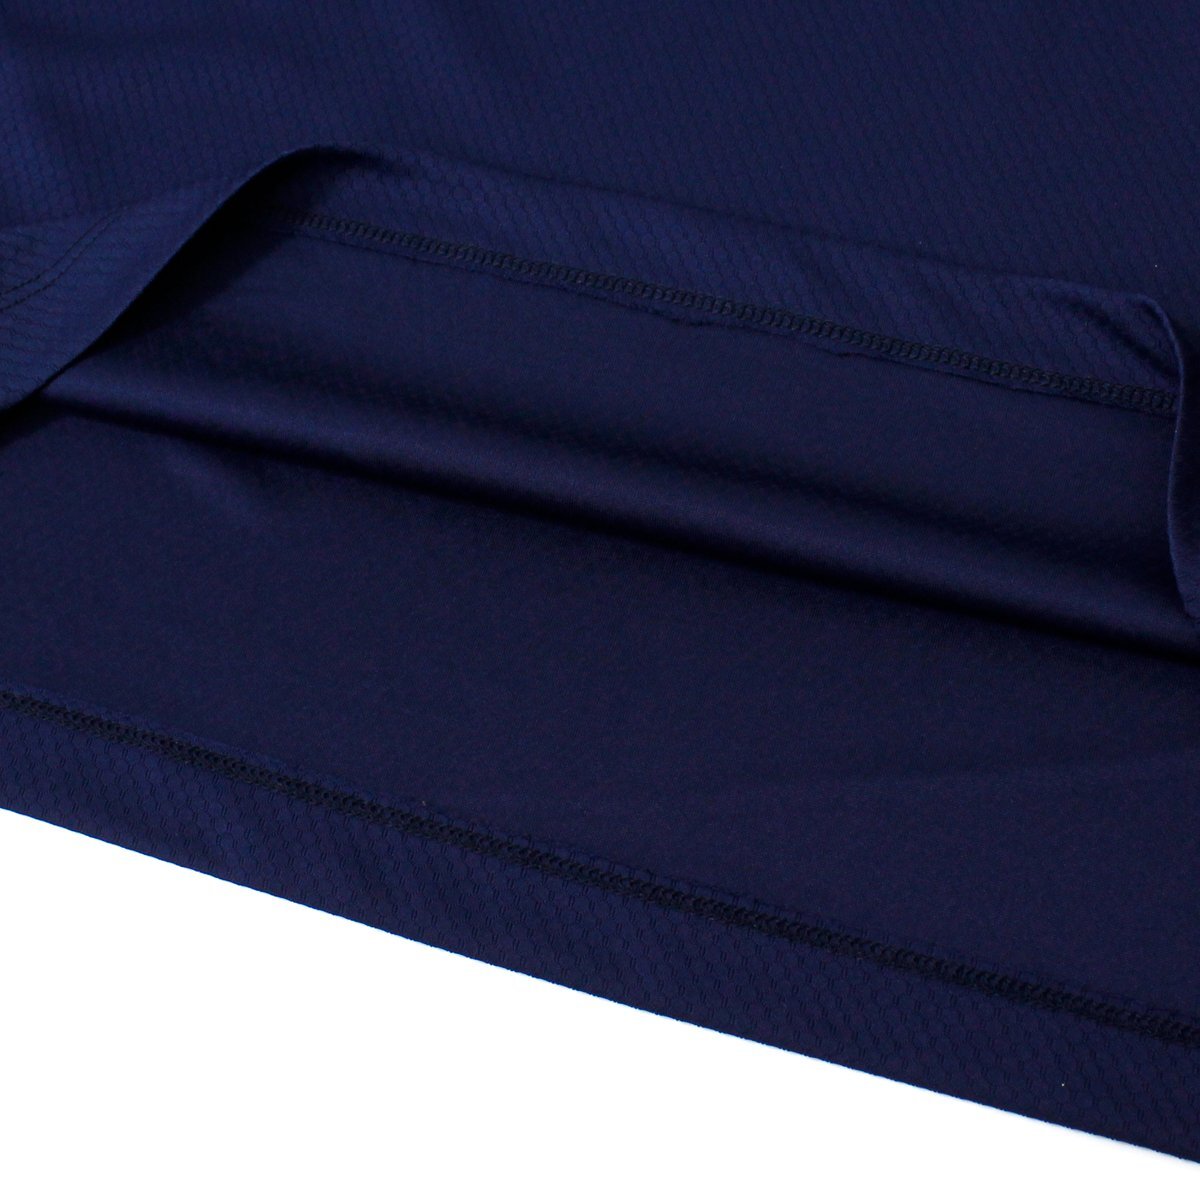  новый товар Tour Stage Golf рубашка с длинным рукавом M темно-синий Bridgestone TOURSTAGE GOLF половина Zip мужской одежда . вода скорость . антибактериальный дезодорация *CS1965A